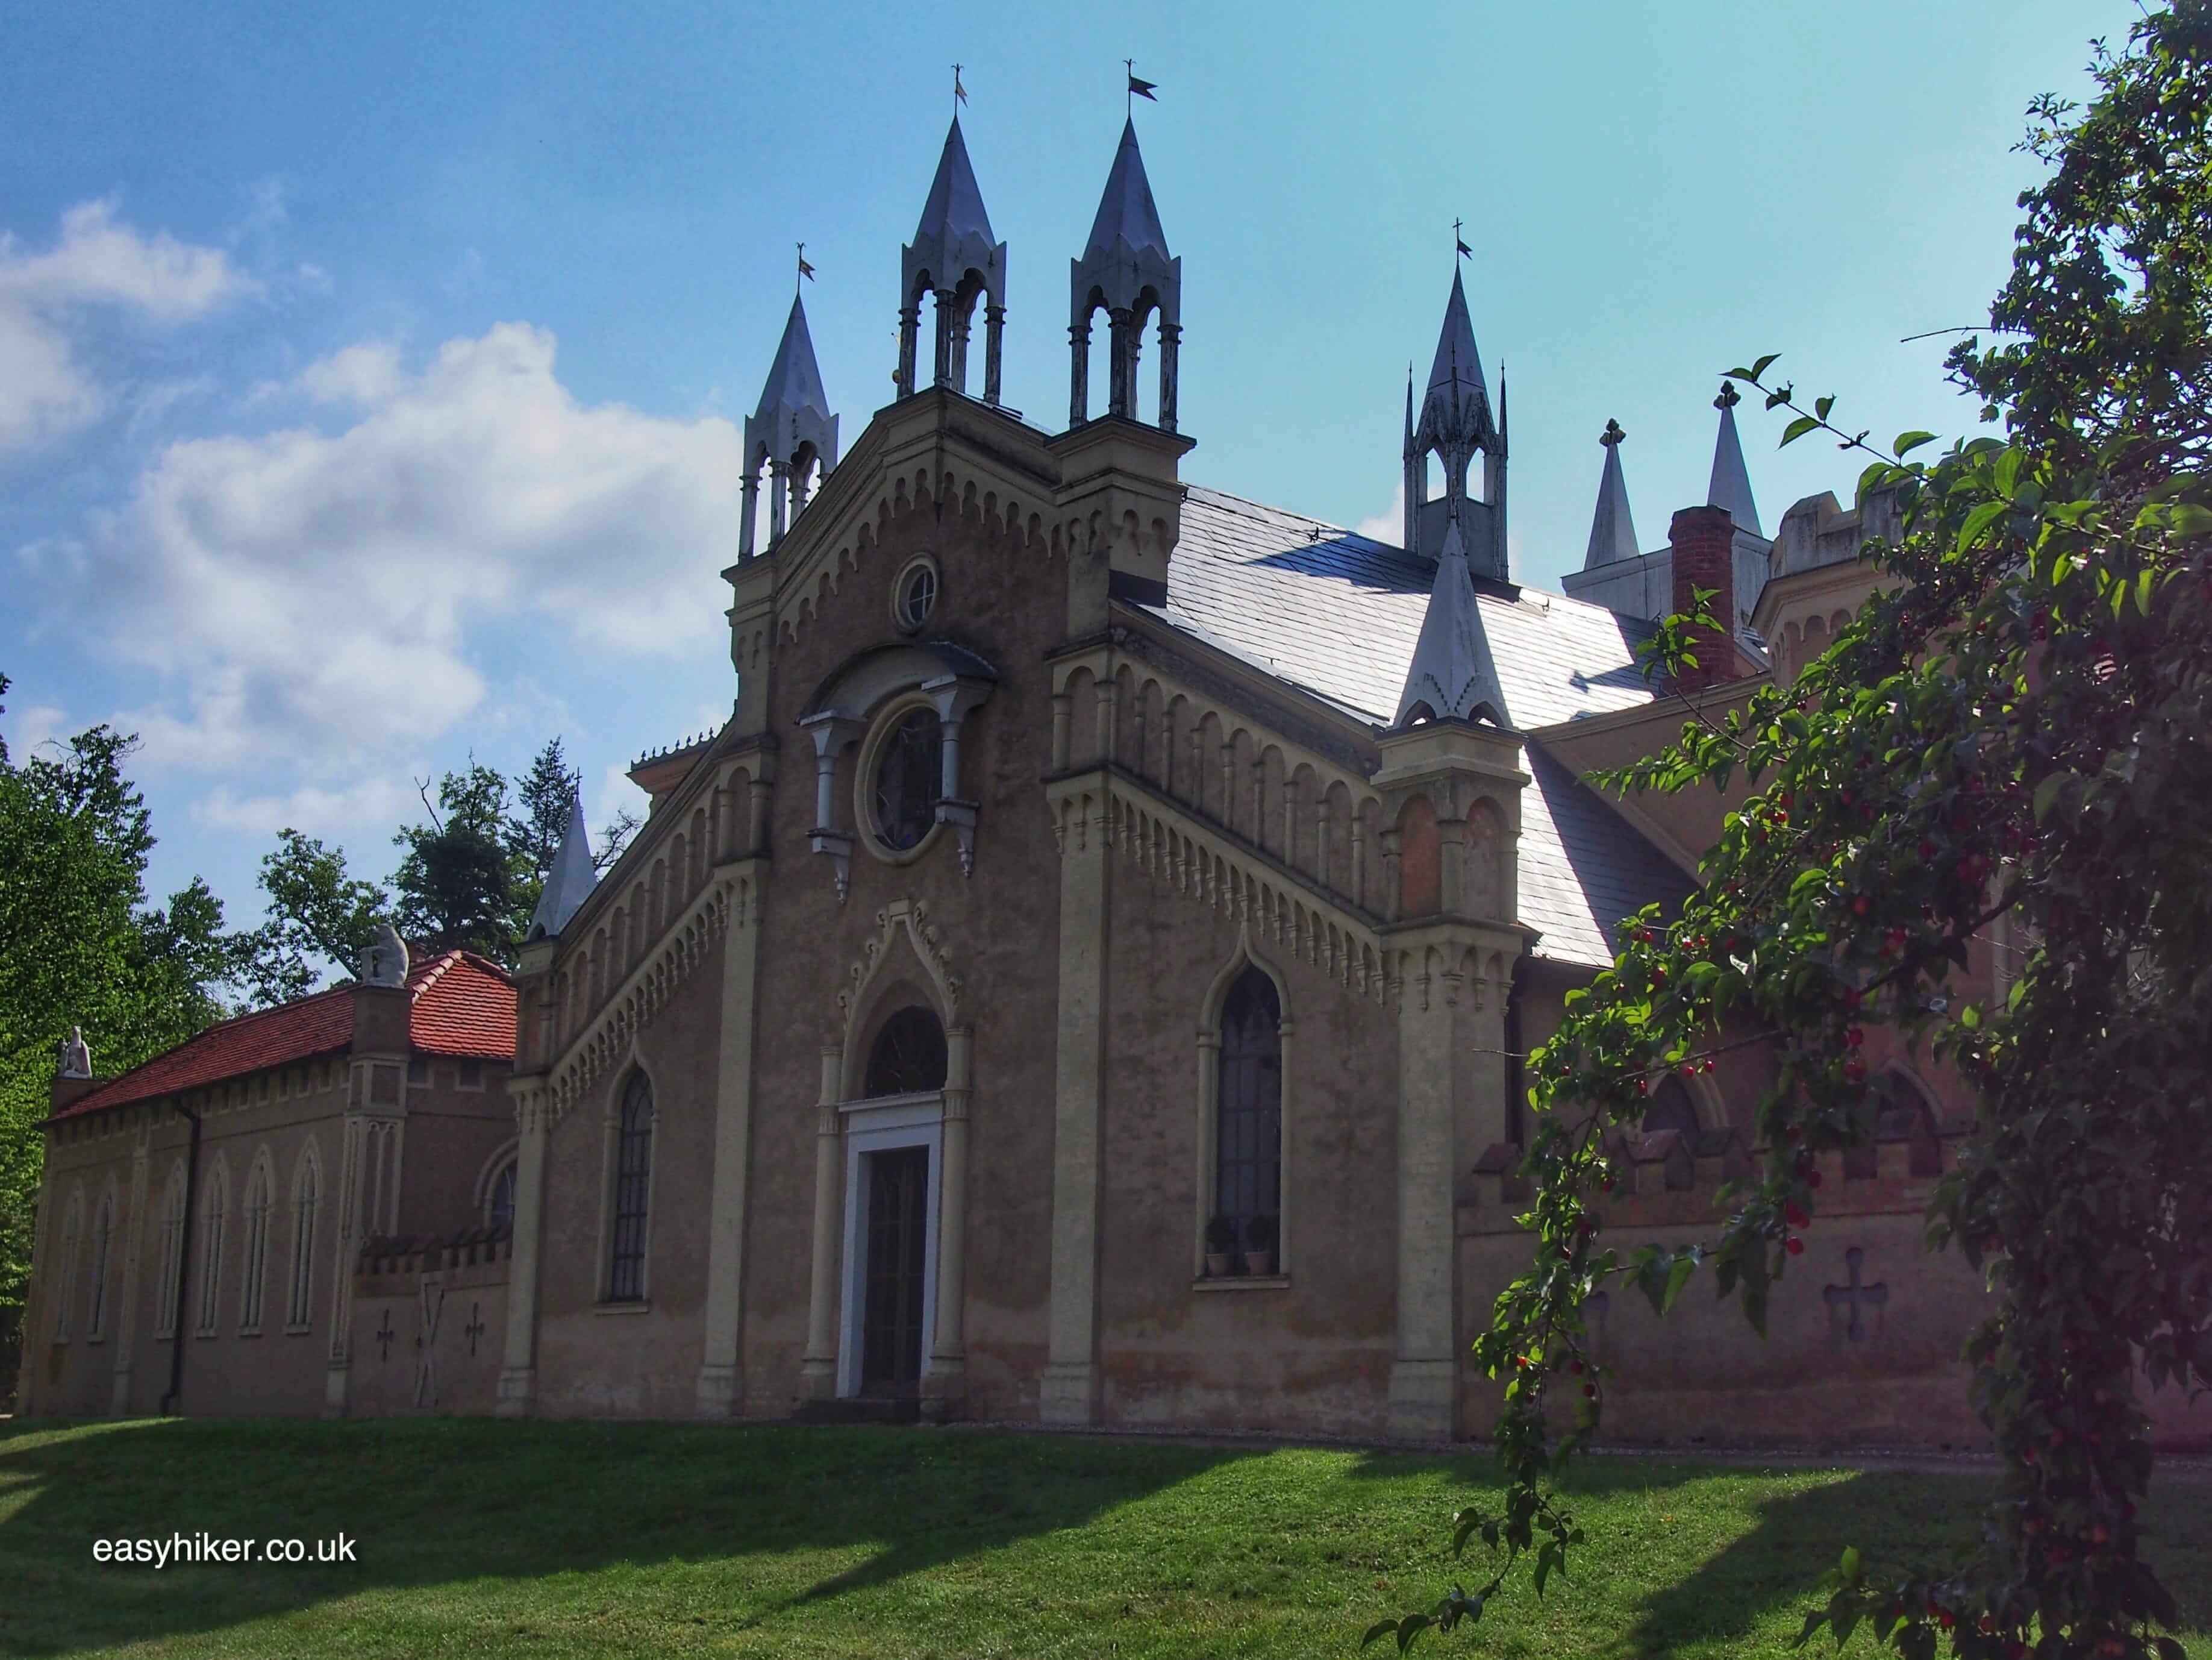 "famous church in the Garden Kingdom of Woerlitz-Dessau"